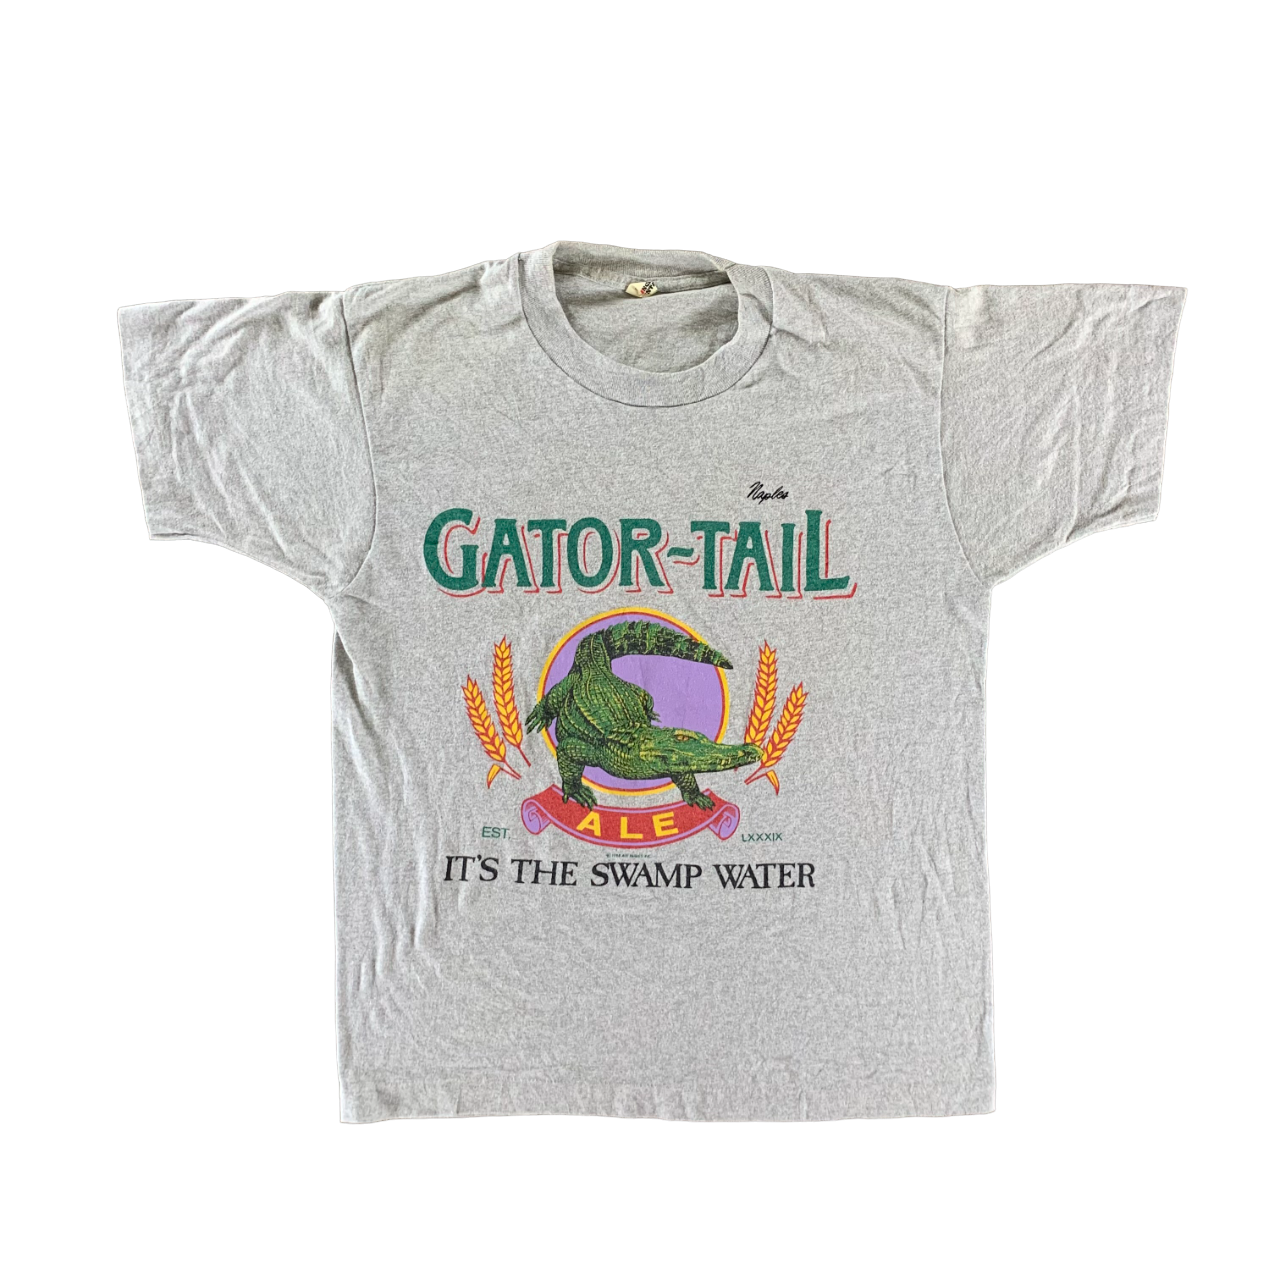 Vintage 1988 Gator Tail T-shirt size Large